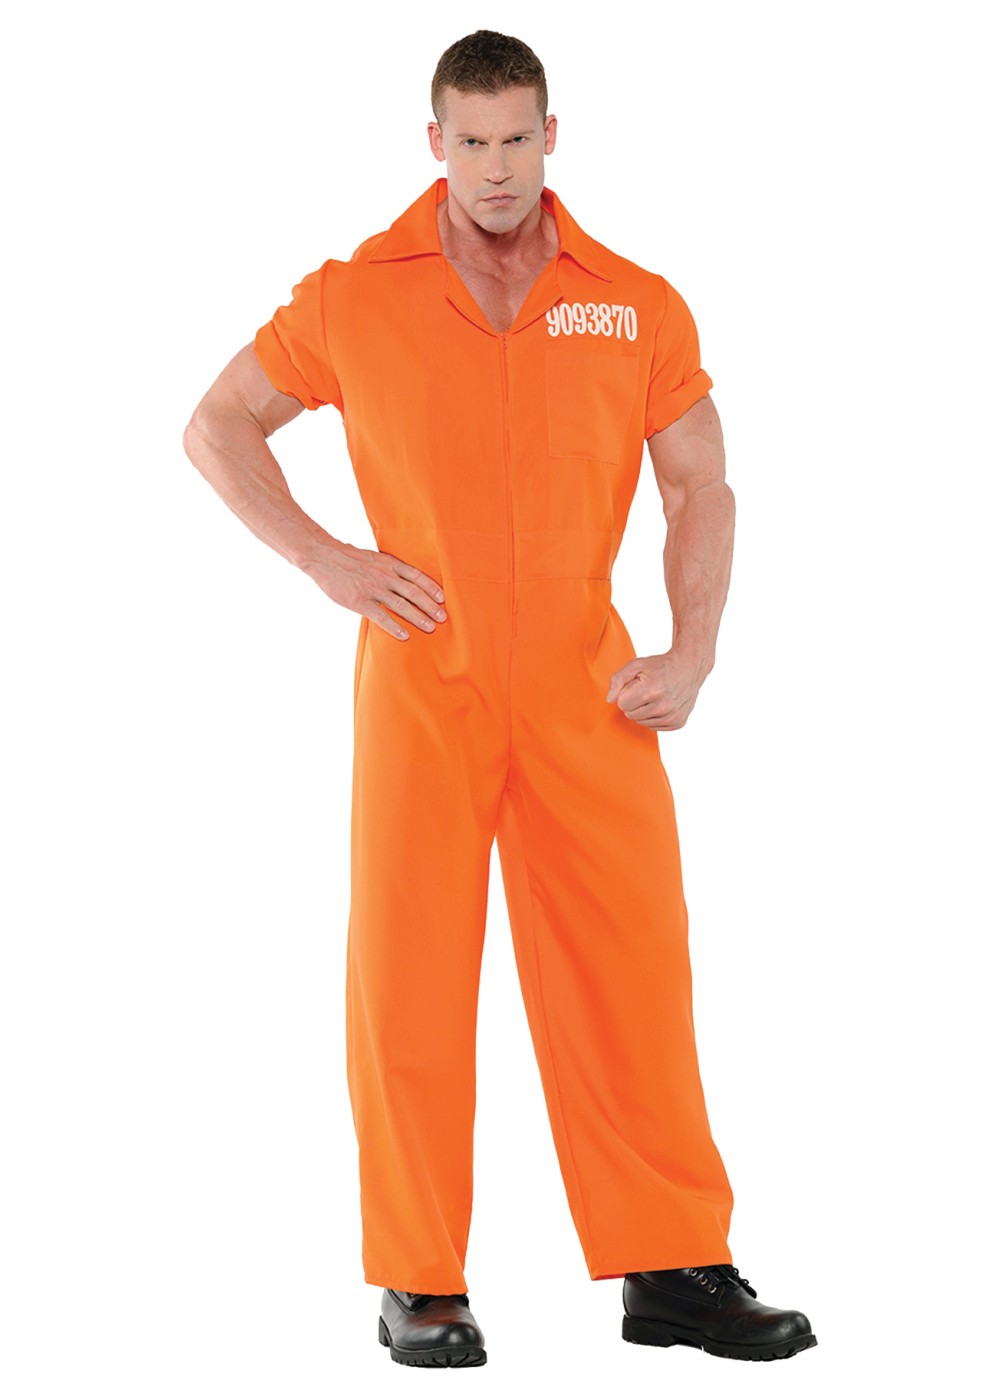 Orange Prison Jumpsuit Men Costume